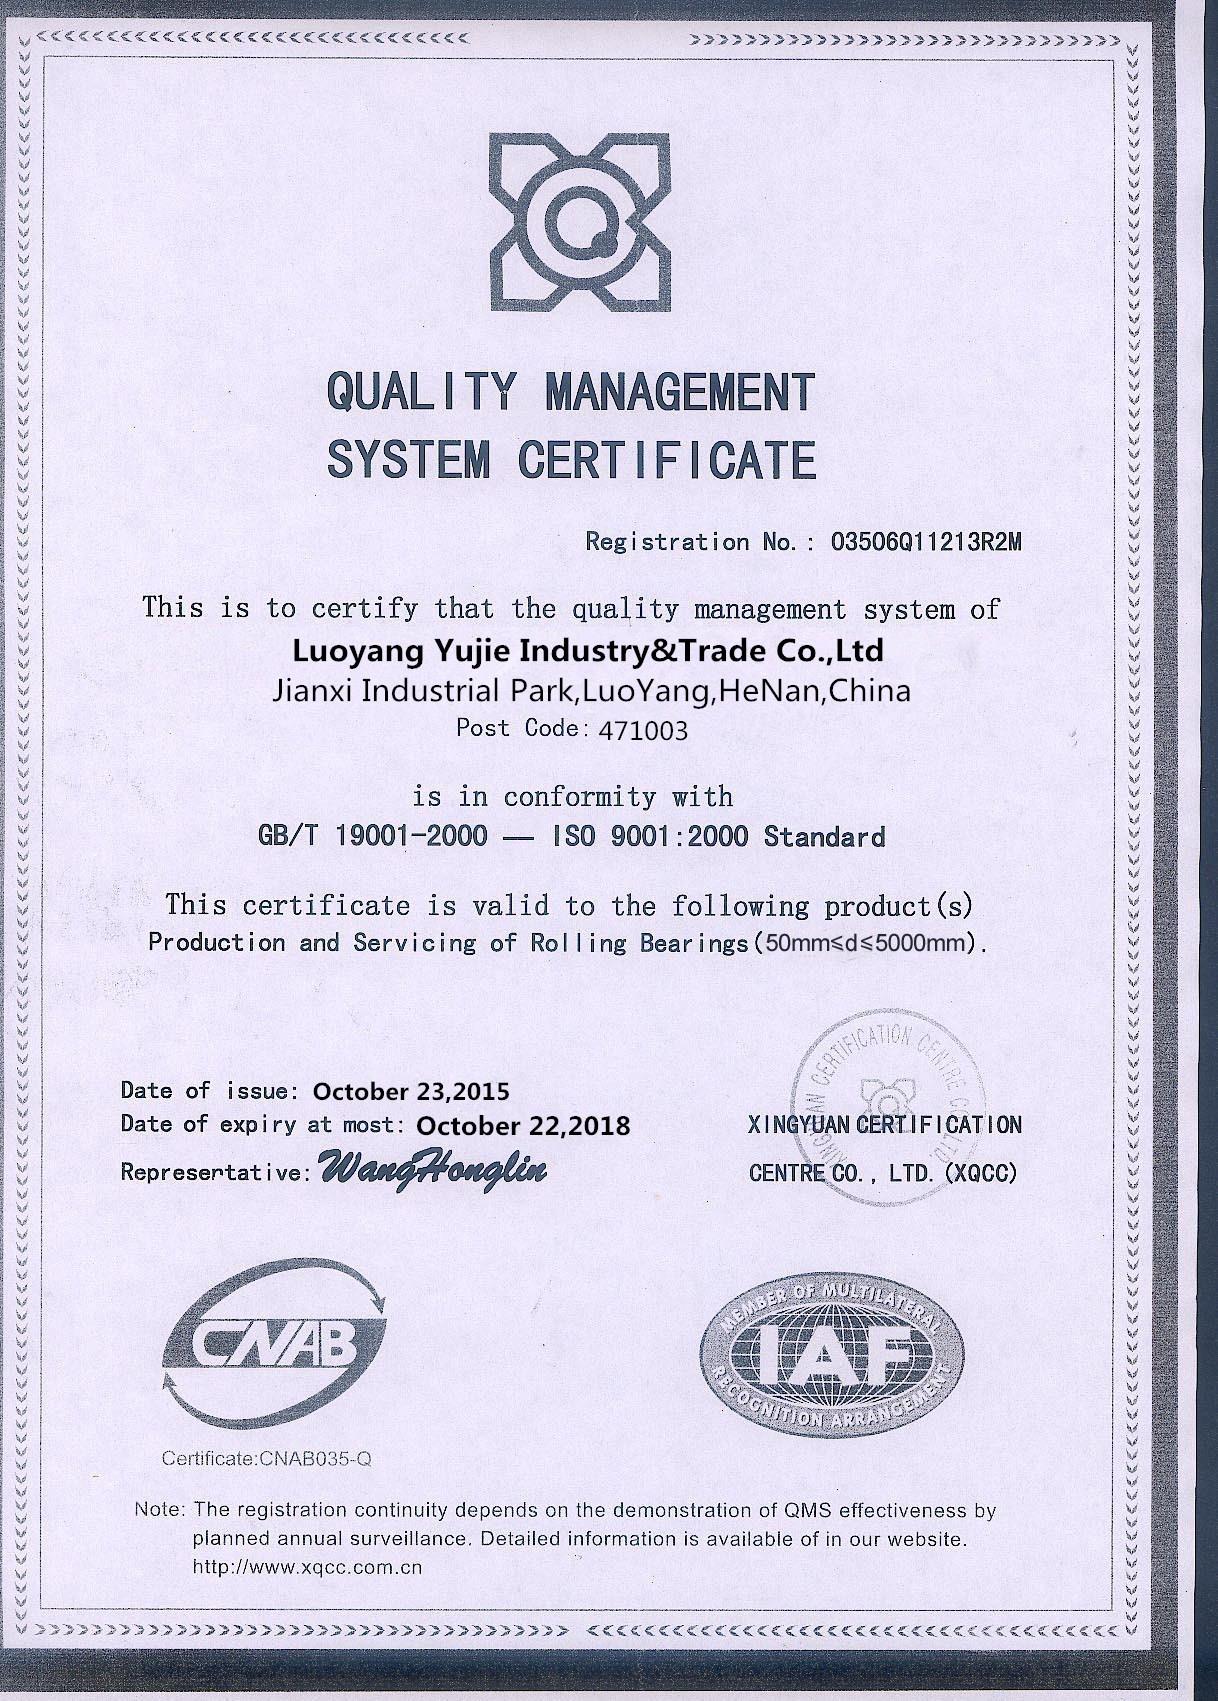 ISO 9001 Quality Certificate from Luoyang Yujie.jpg